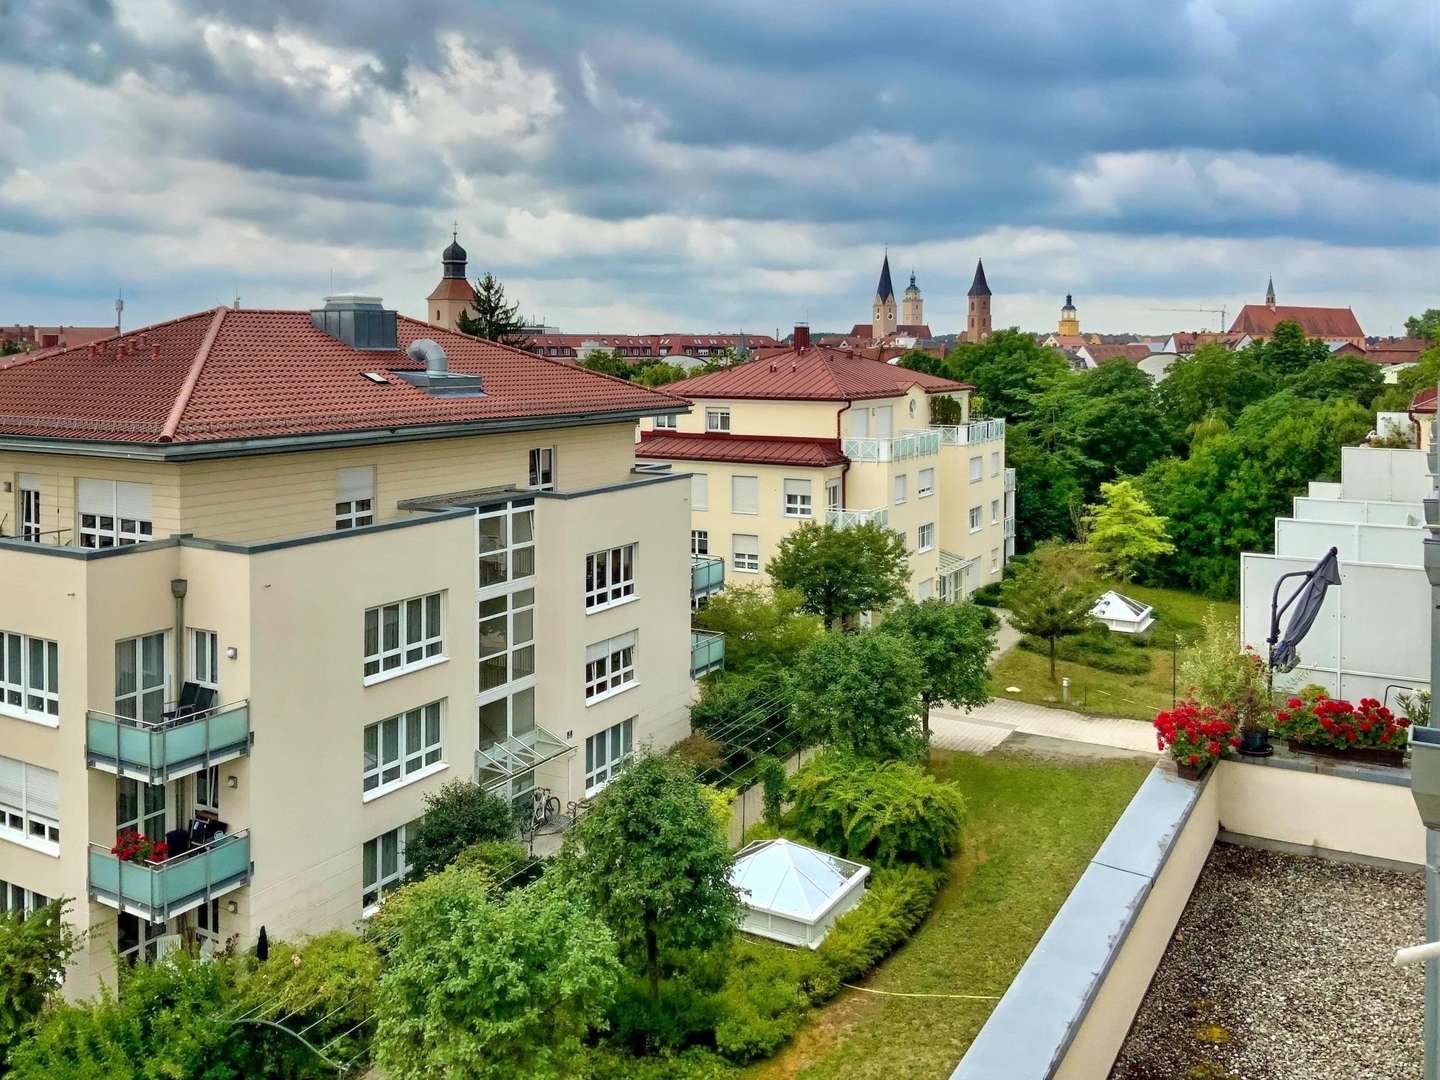 Blick vom Balkon - Wohnung in 85049 Ingolstadt mit 61m² kaufen